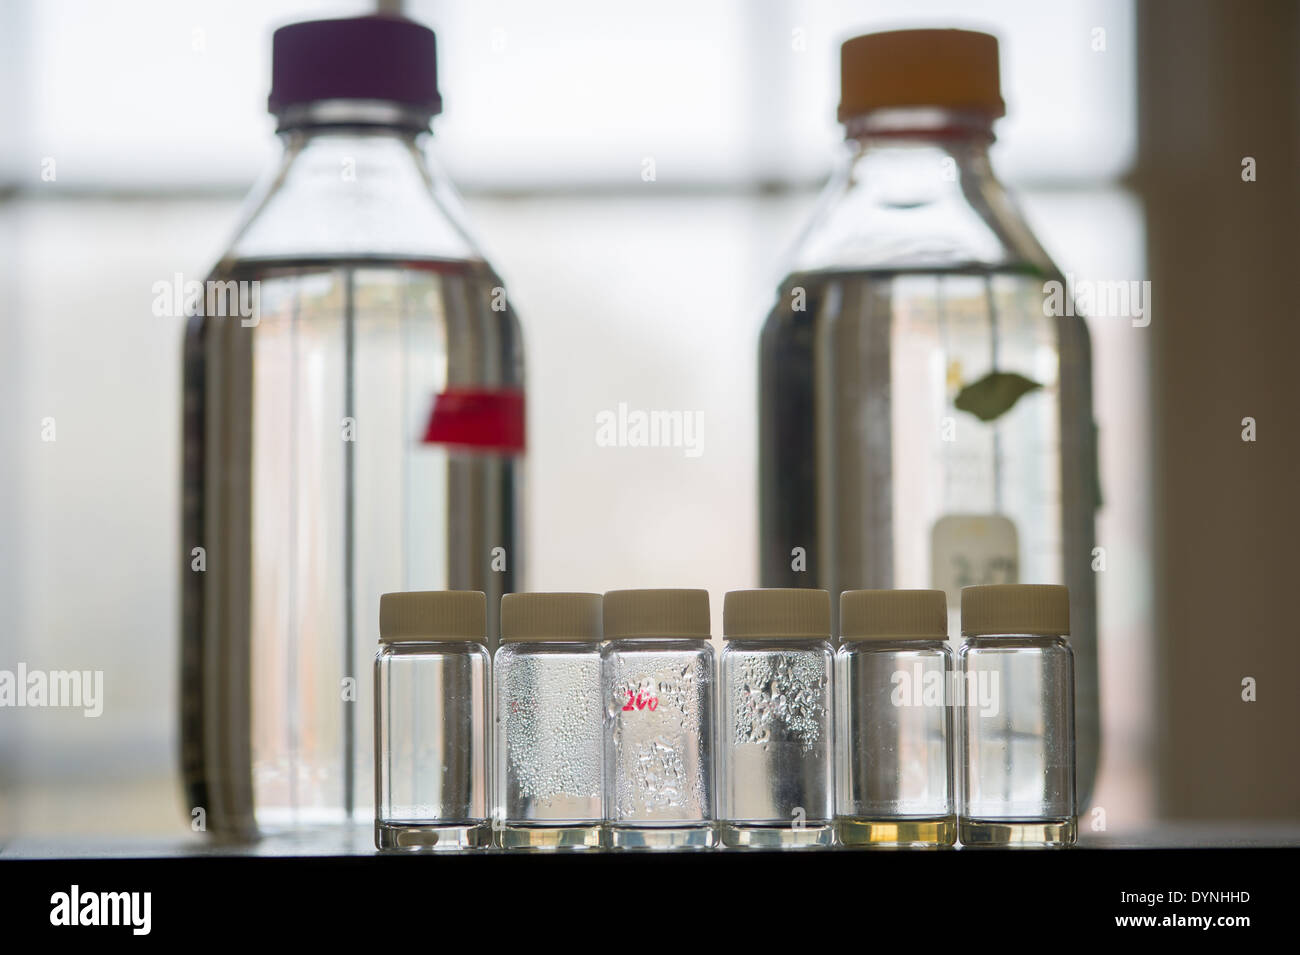 Les contenants de verre dans un laboratoire College Park, Maryland Banque D'Images